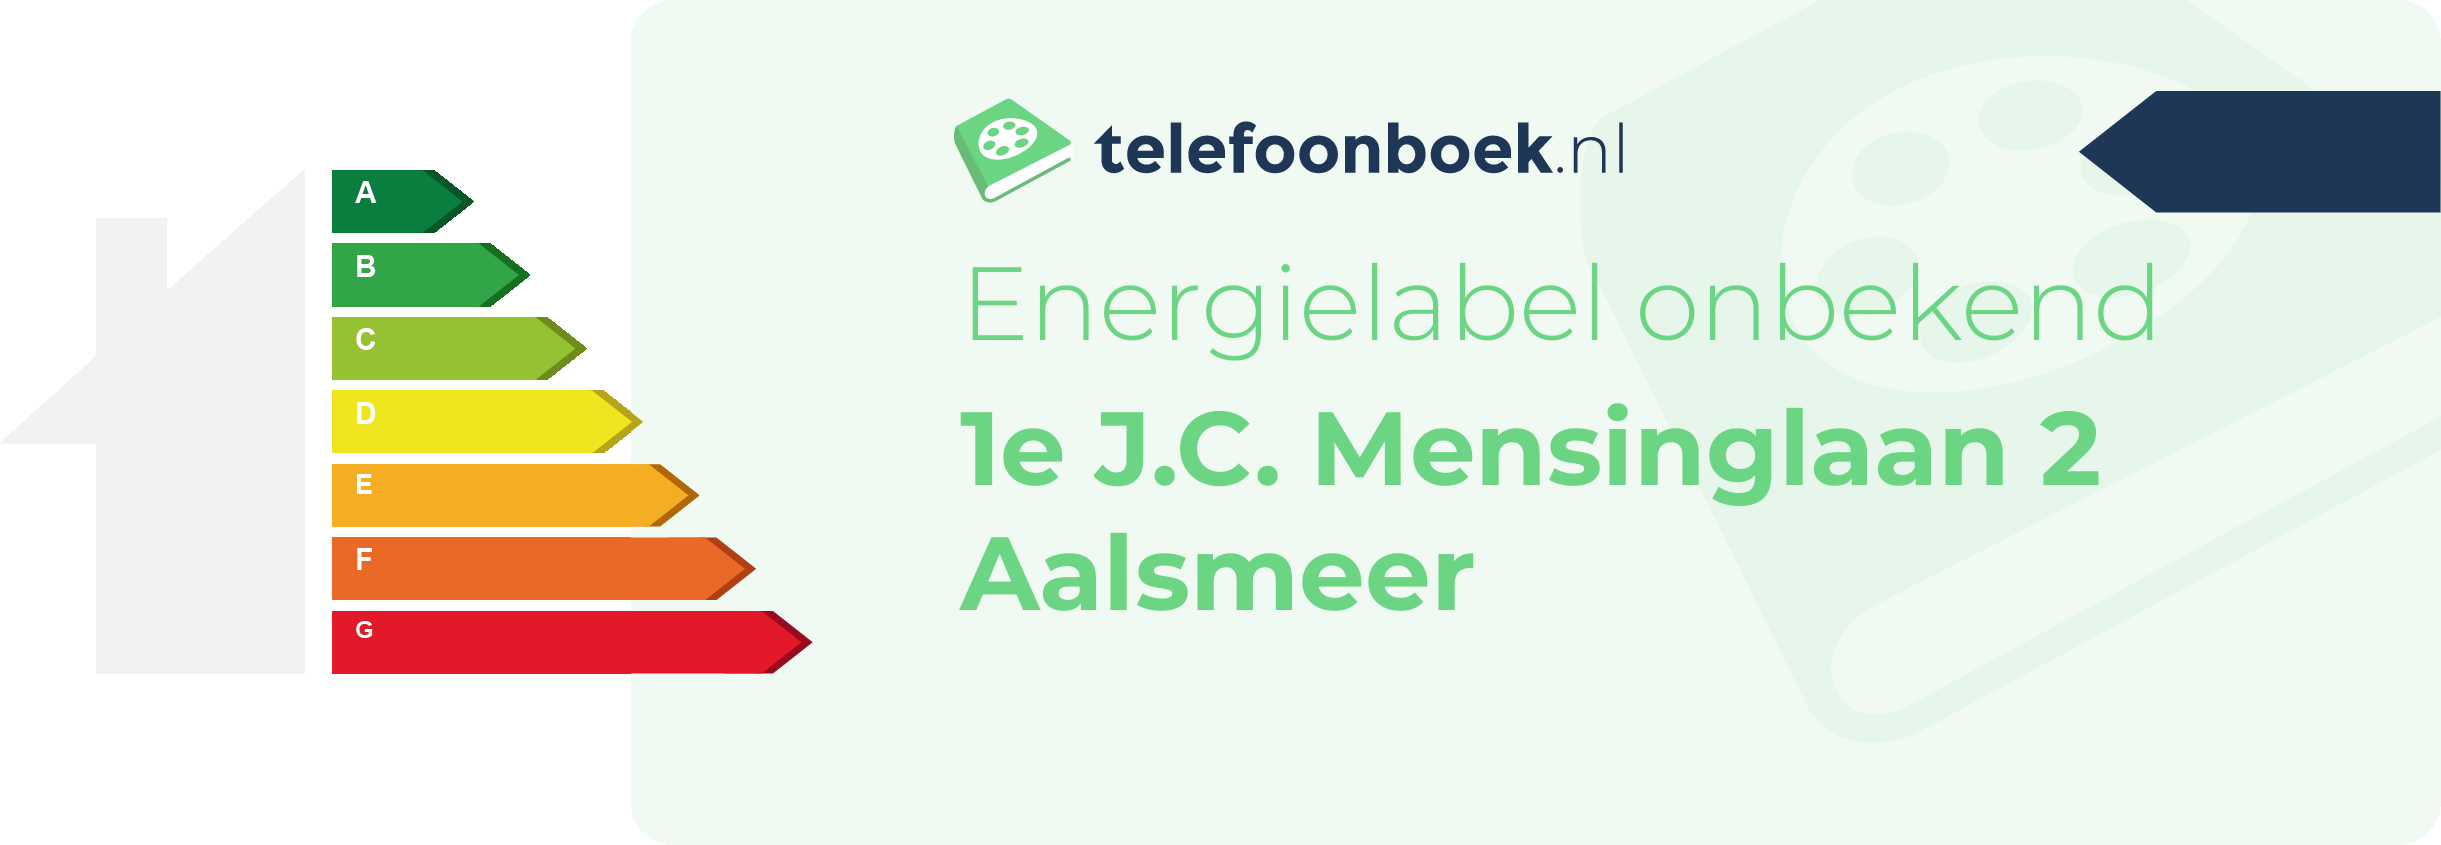 Energielabel 1e J.C. Mensinglaan 2 Aalsmeer